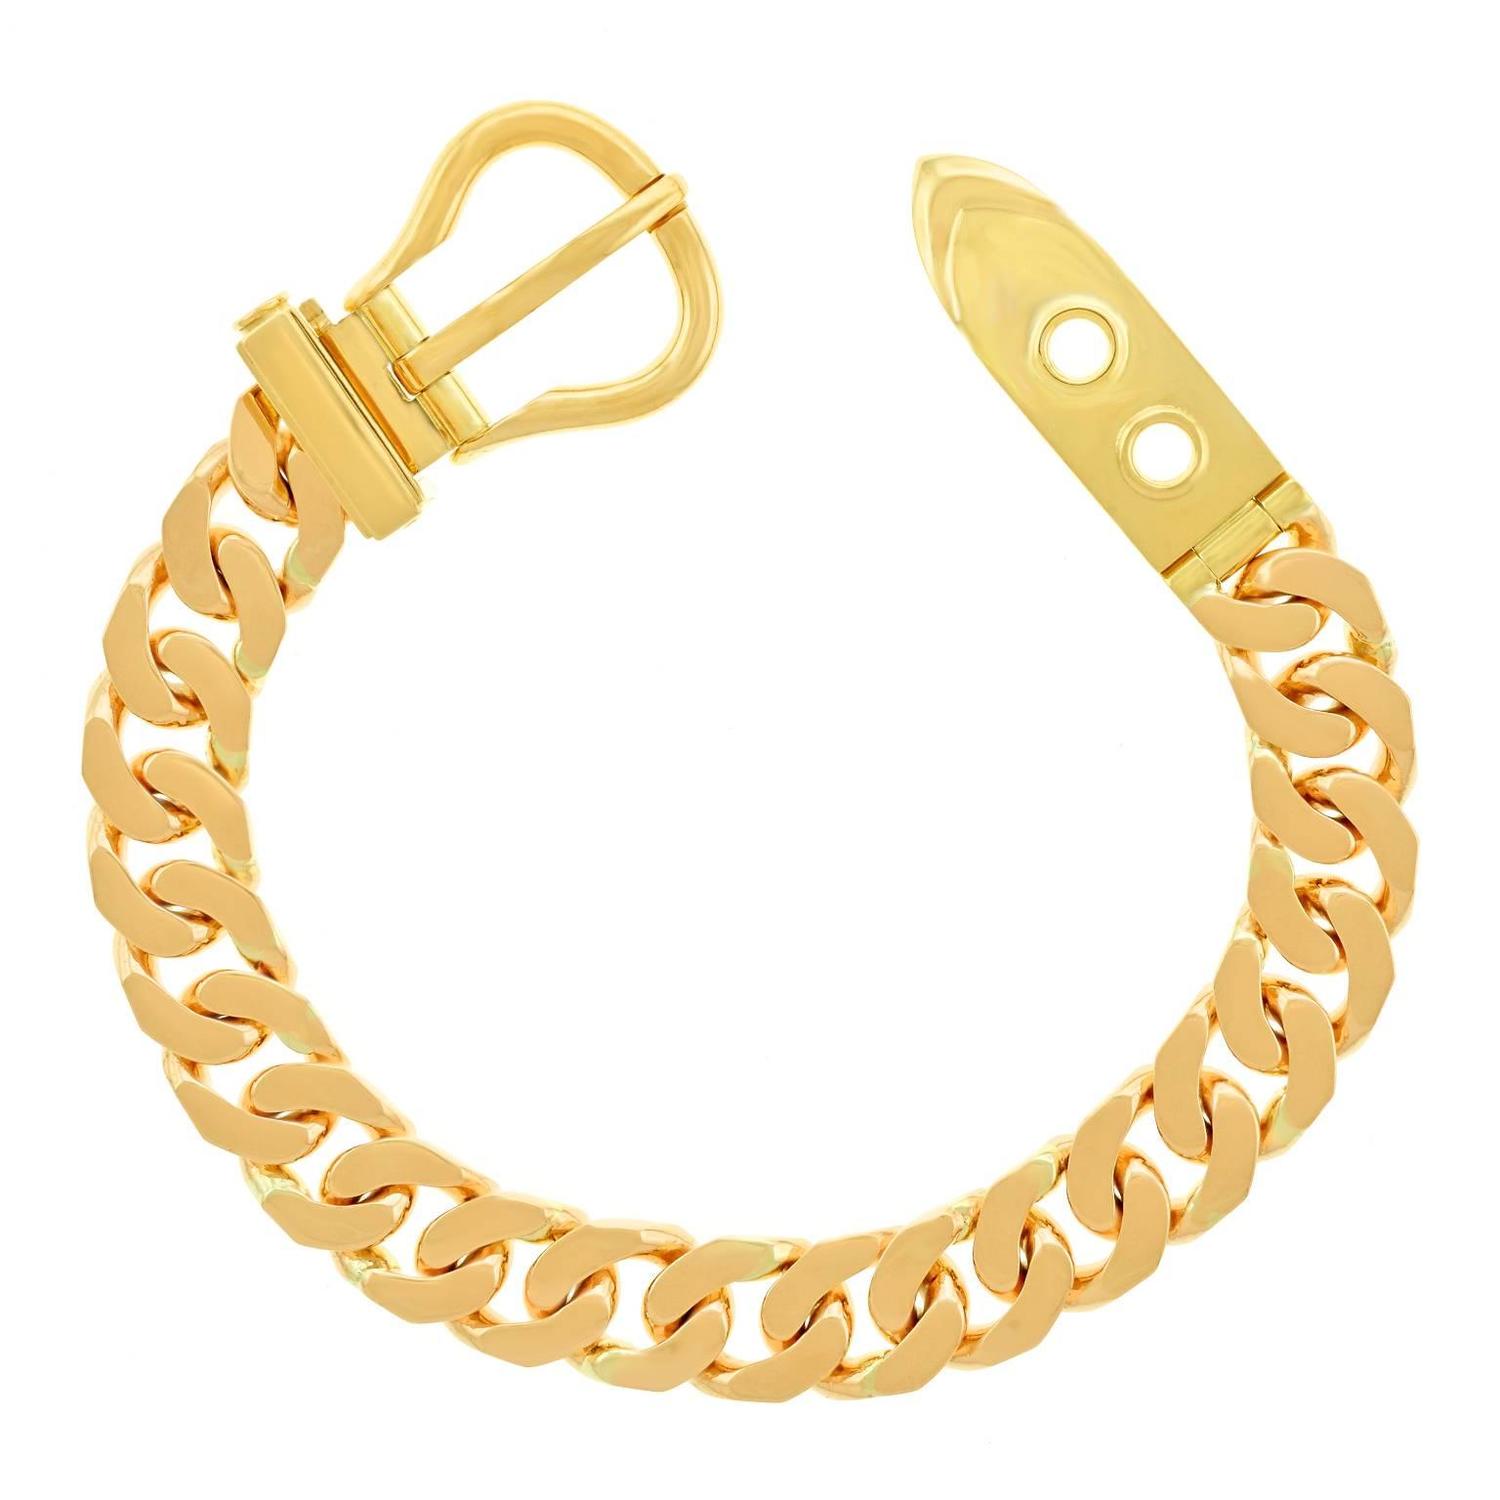 Hermes Gold Buckle Bracelet For Sale at 1stdibs